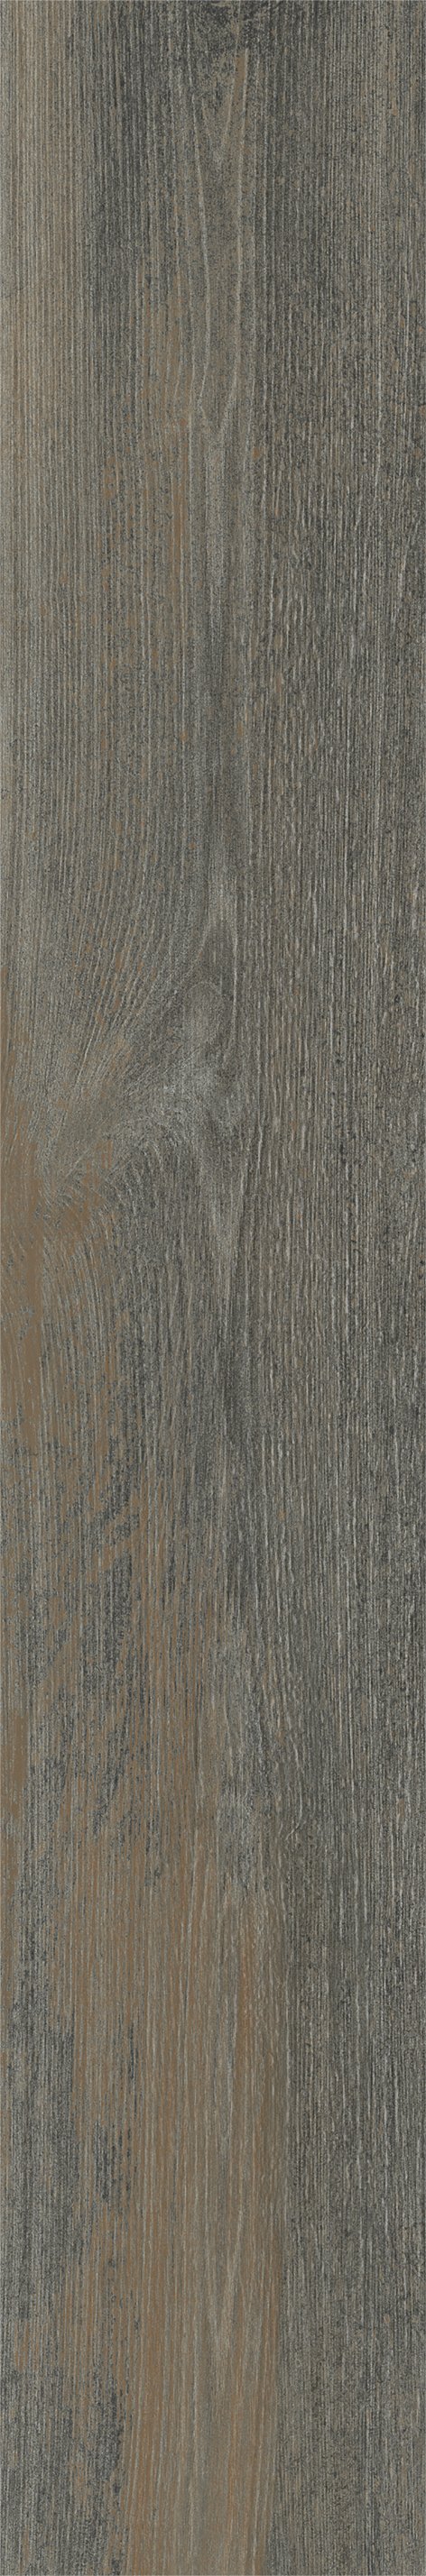 Плитка из керамогранита матовая Italon Грув 20x120 коричневый (610010001885) плитка из керамогранита матовая italon грув 9 5x60 серый 610010001887